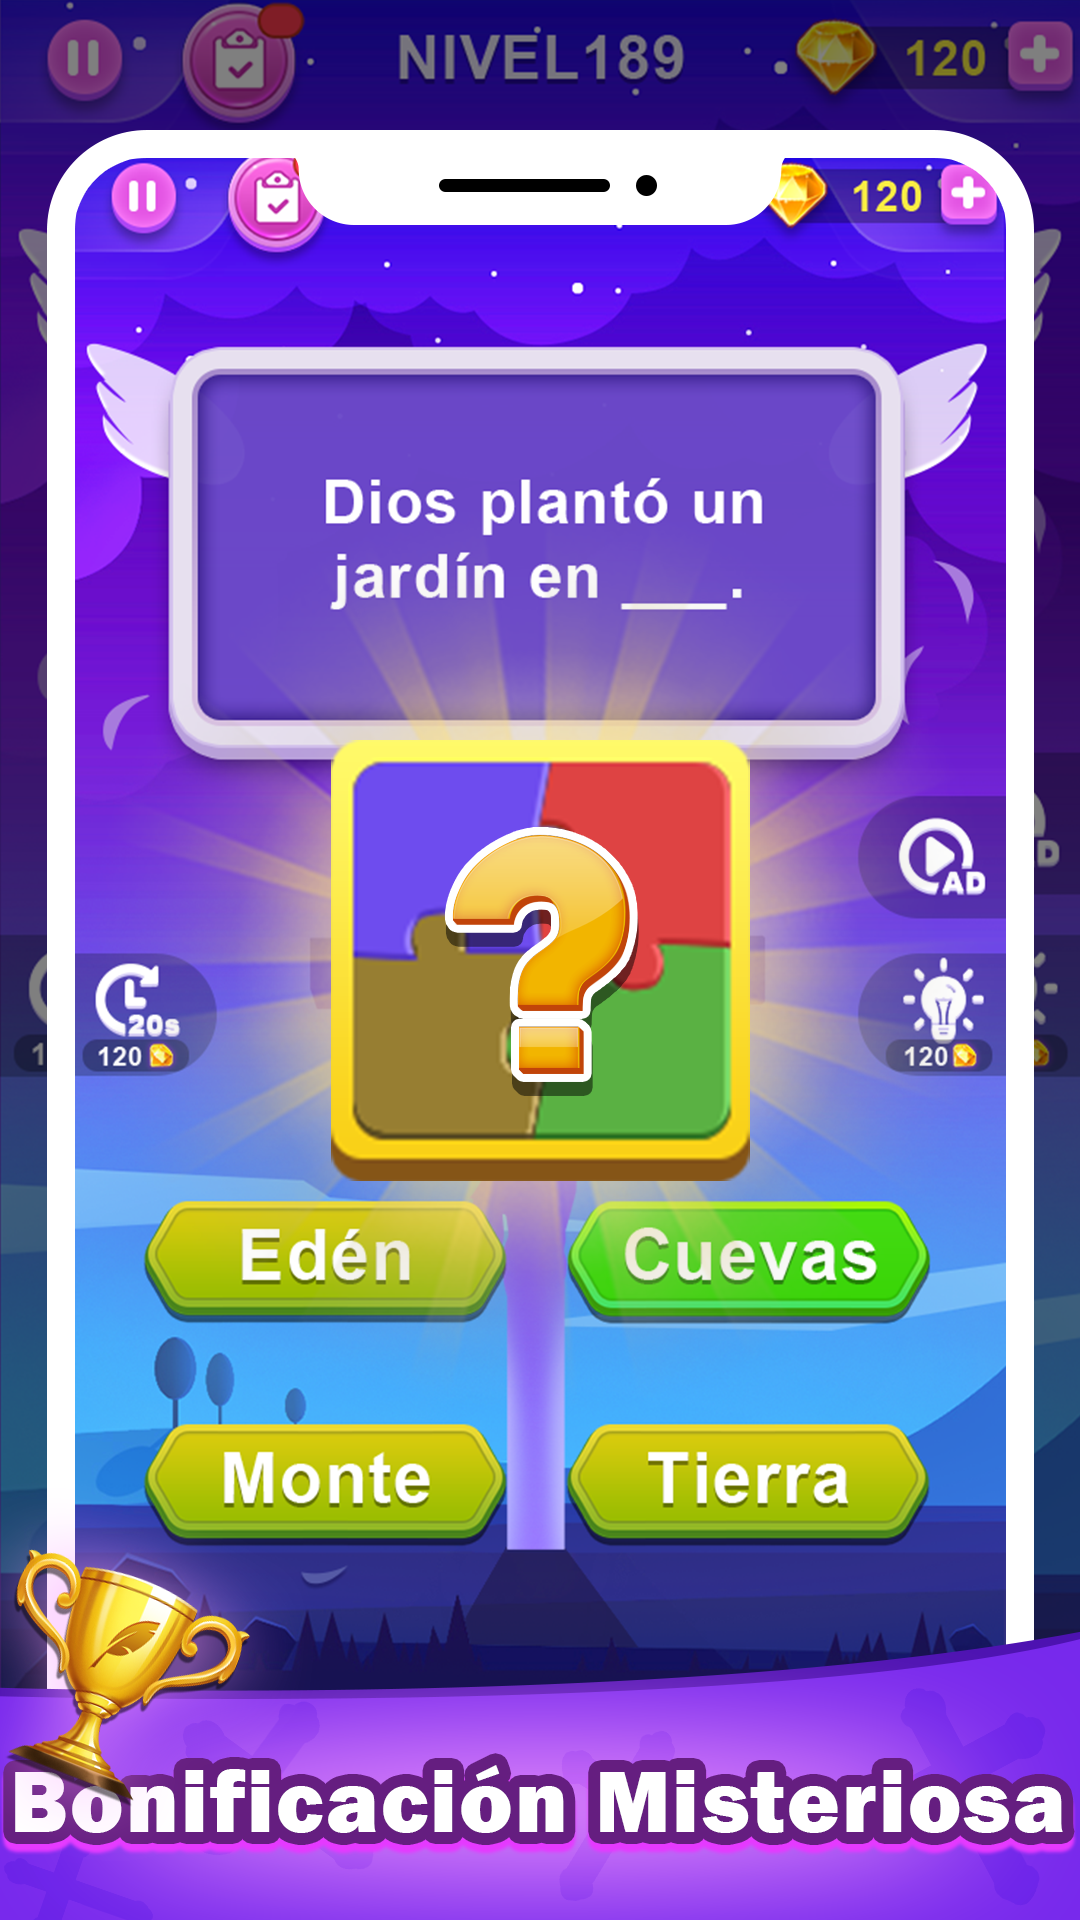 Screenshot of Preguntas de la Biblia